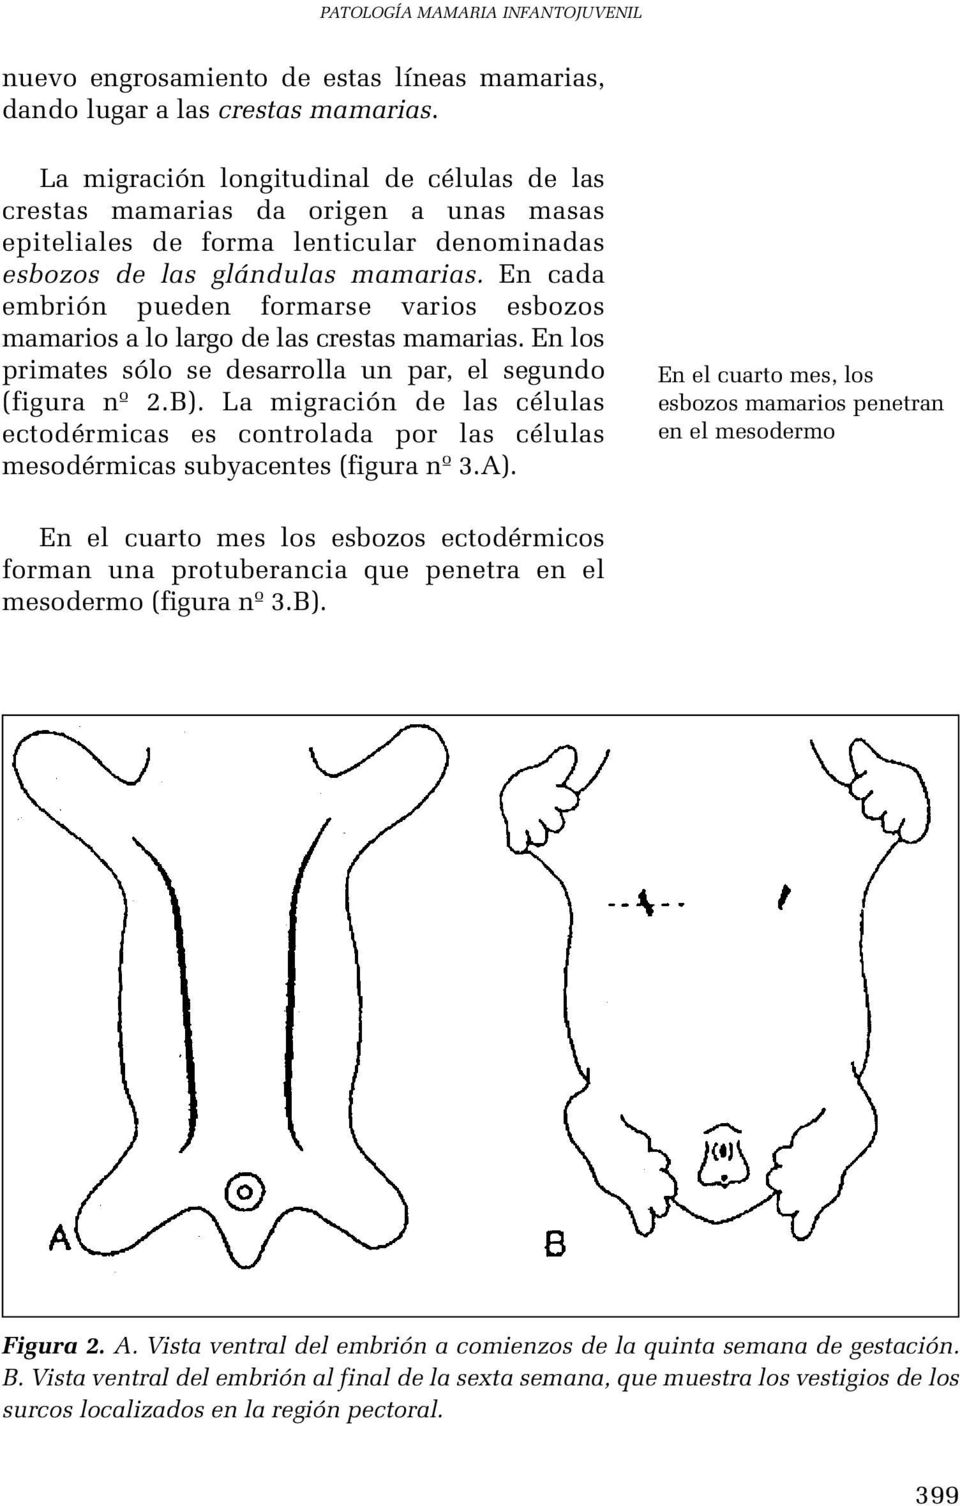 En cada embrión pueden formarse varios esbozos mamarios a lo largo de las crestas mamarias. En los primates sólo se desarrolla un par, el segundo (figura nº 2.B).